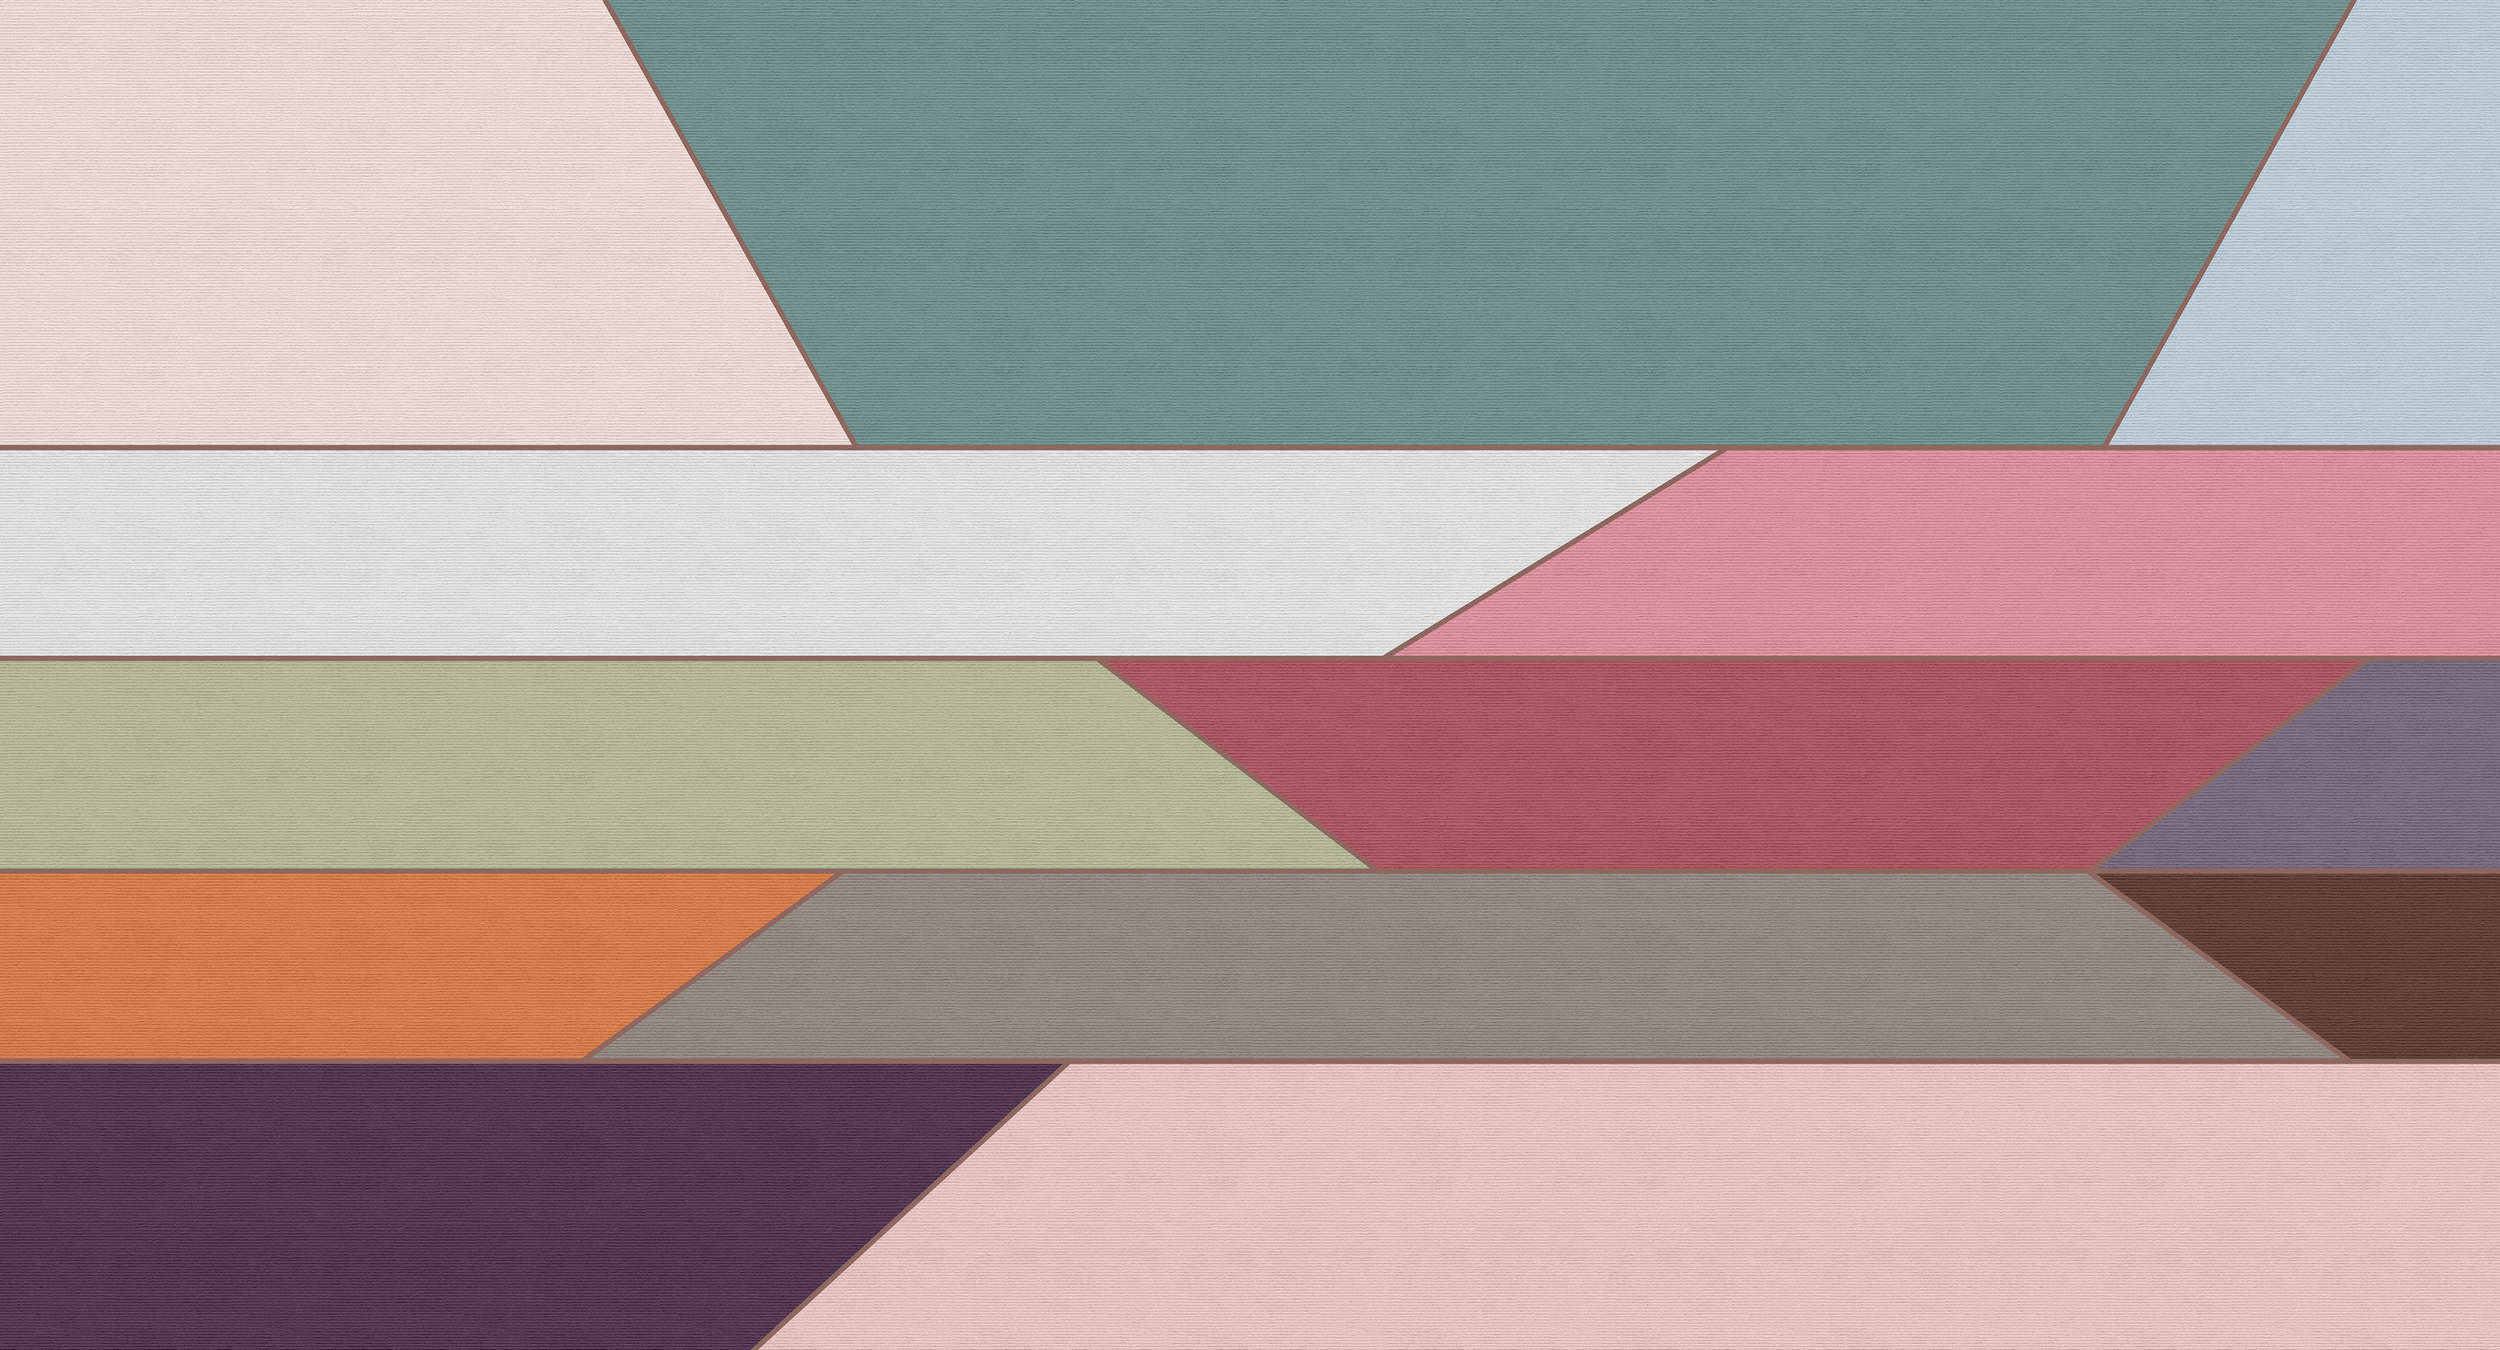             Geometry 2 - Digital behang met kleurrijk horizontaal streeppatroon in ribbelstructuur - Beige, Blauw | Pearl glad fleece
        